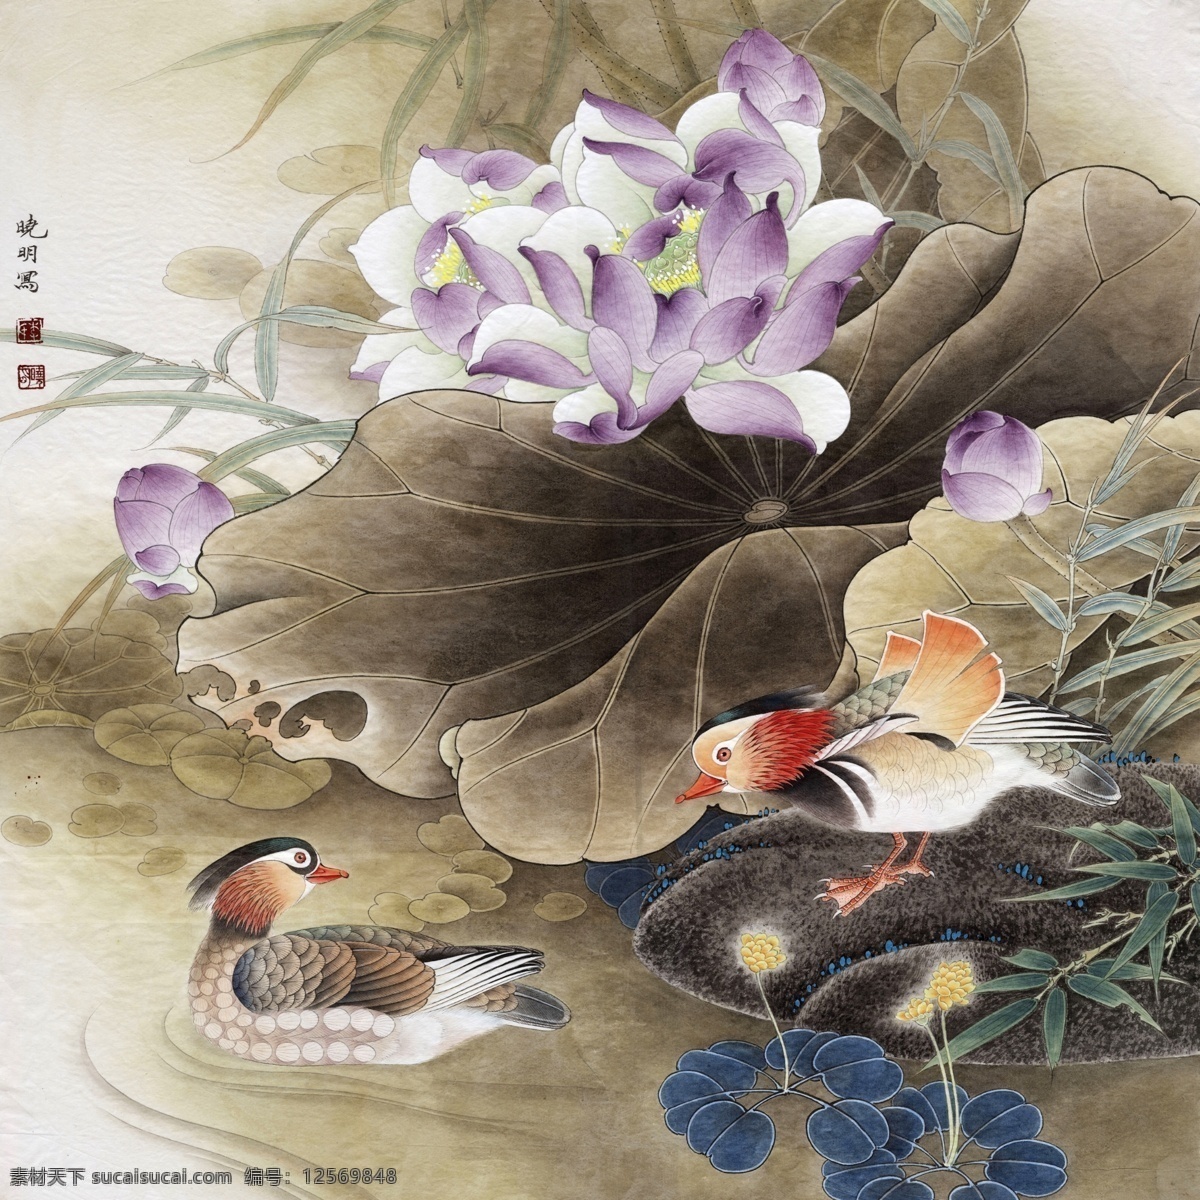 中式 古典 花鸟 工笔画 中国风绘画 精美绘画 植物花鸟 装饰画 古典画 牡丹花朵 绿叶 繁花 文化艺术 美术绘画